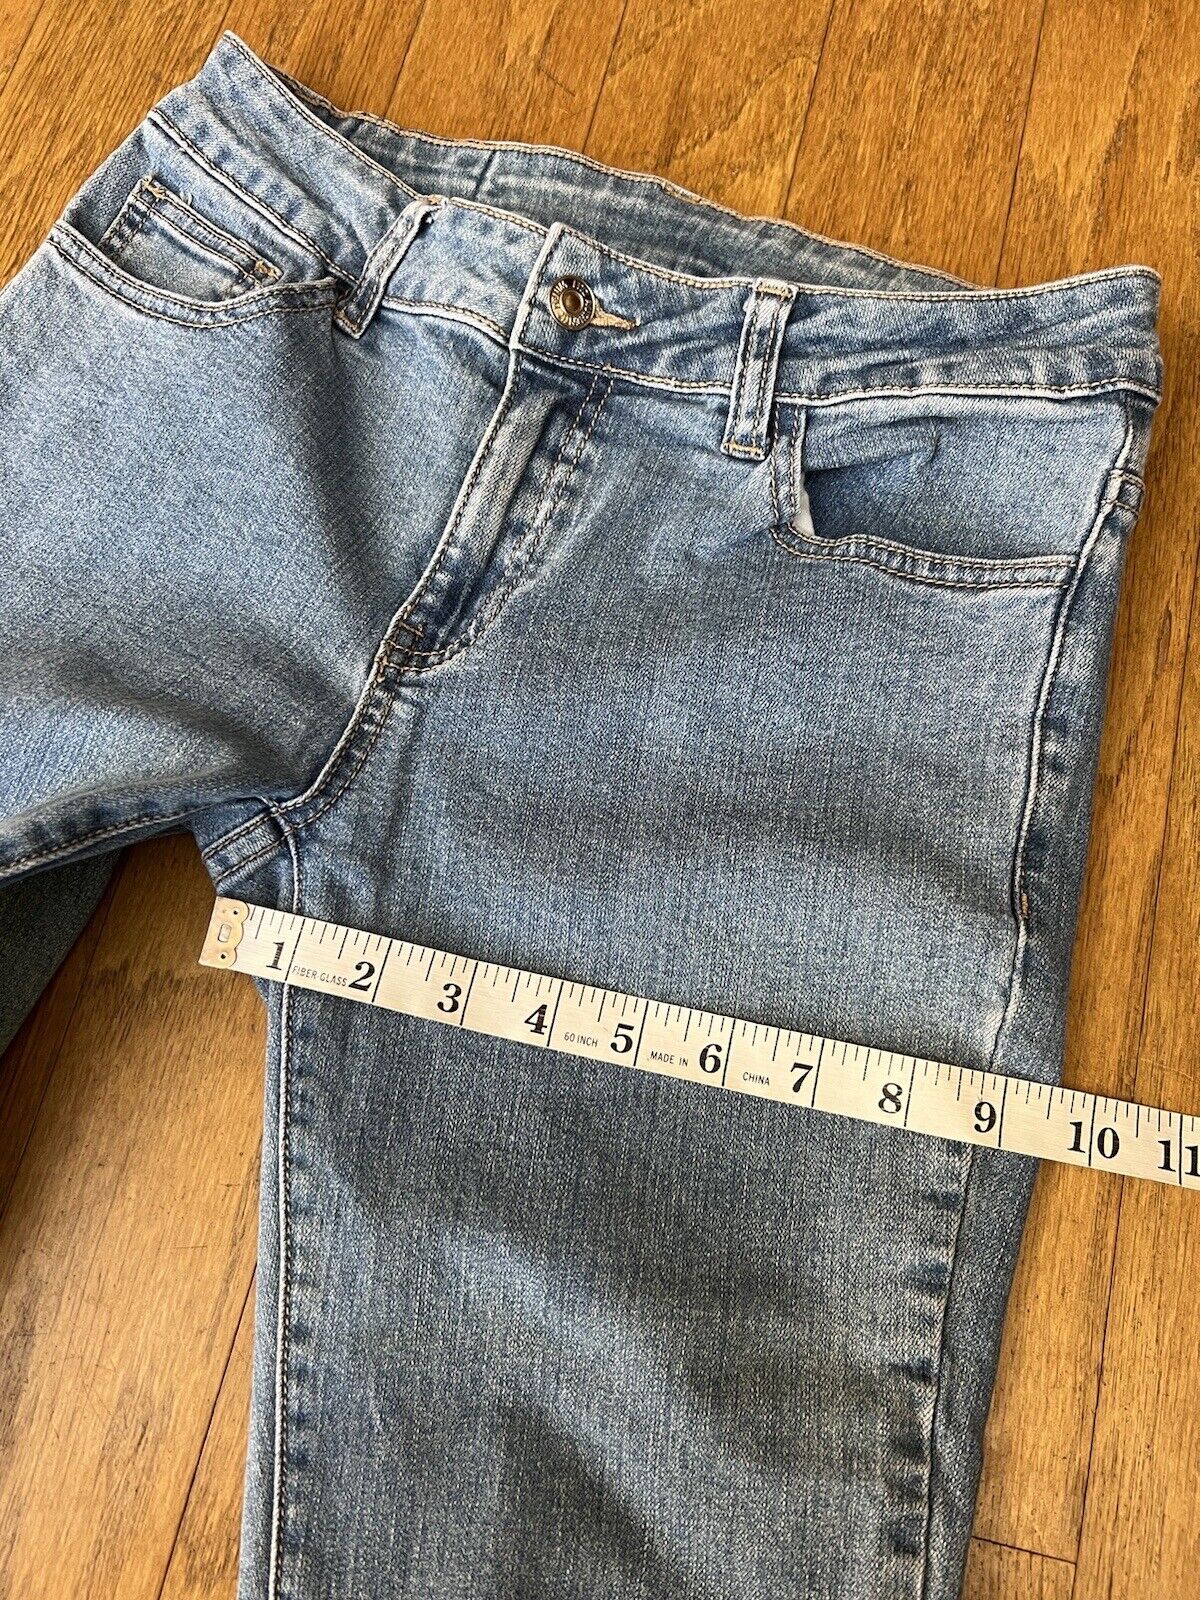 LITZ Denim Brand Womens Bell Bottom Flare Jeans S… - image 8